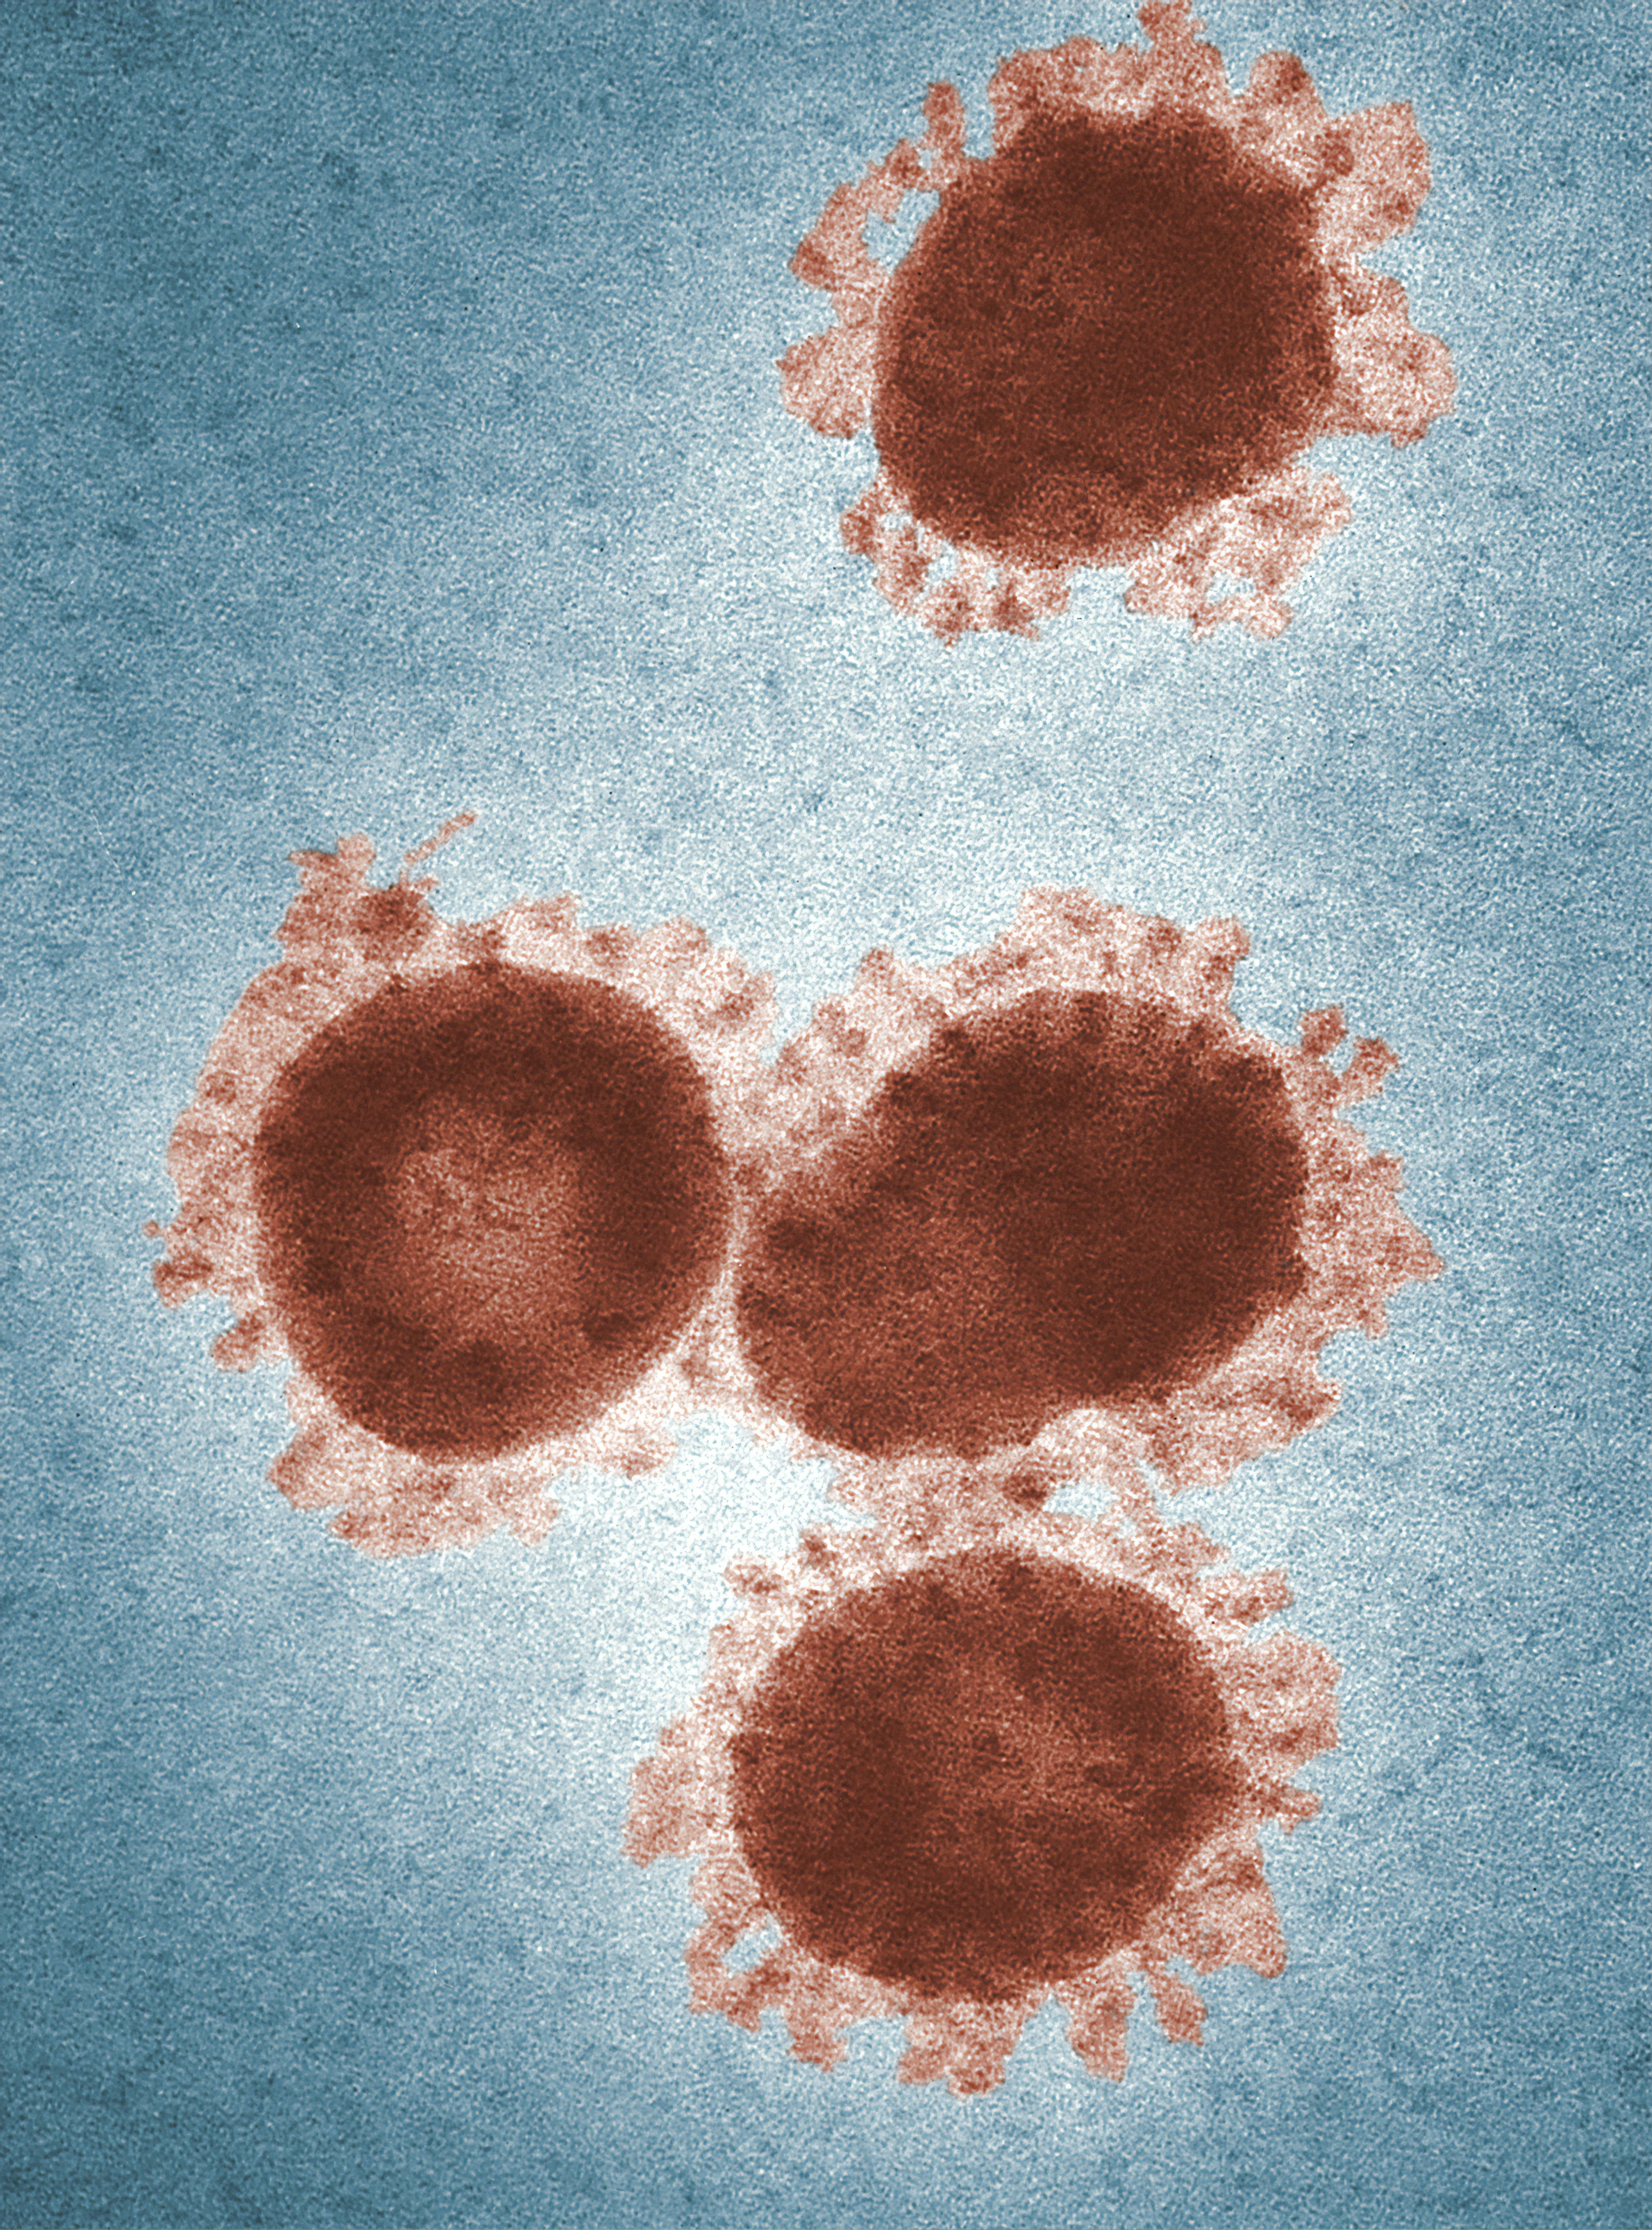 La inmunidad en el coronavirus podría durar más de seis meses, según un estudio